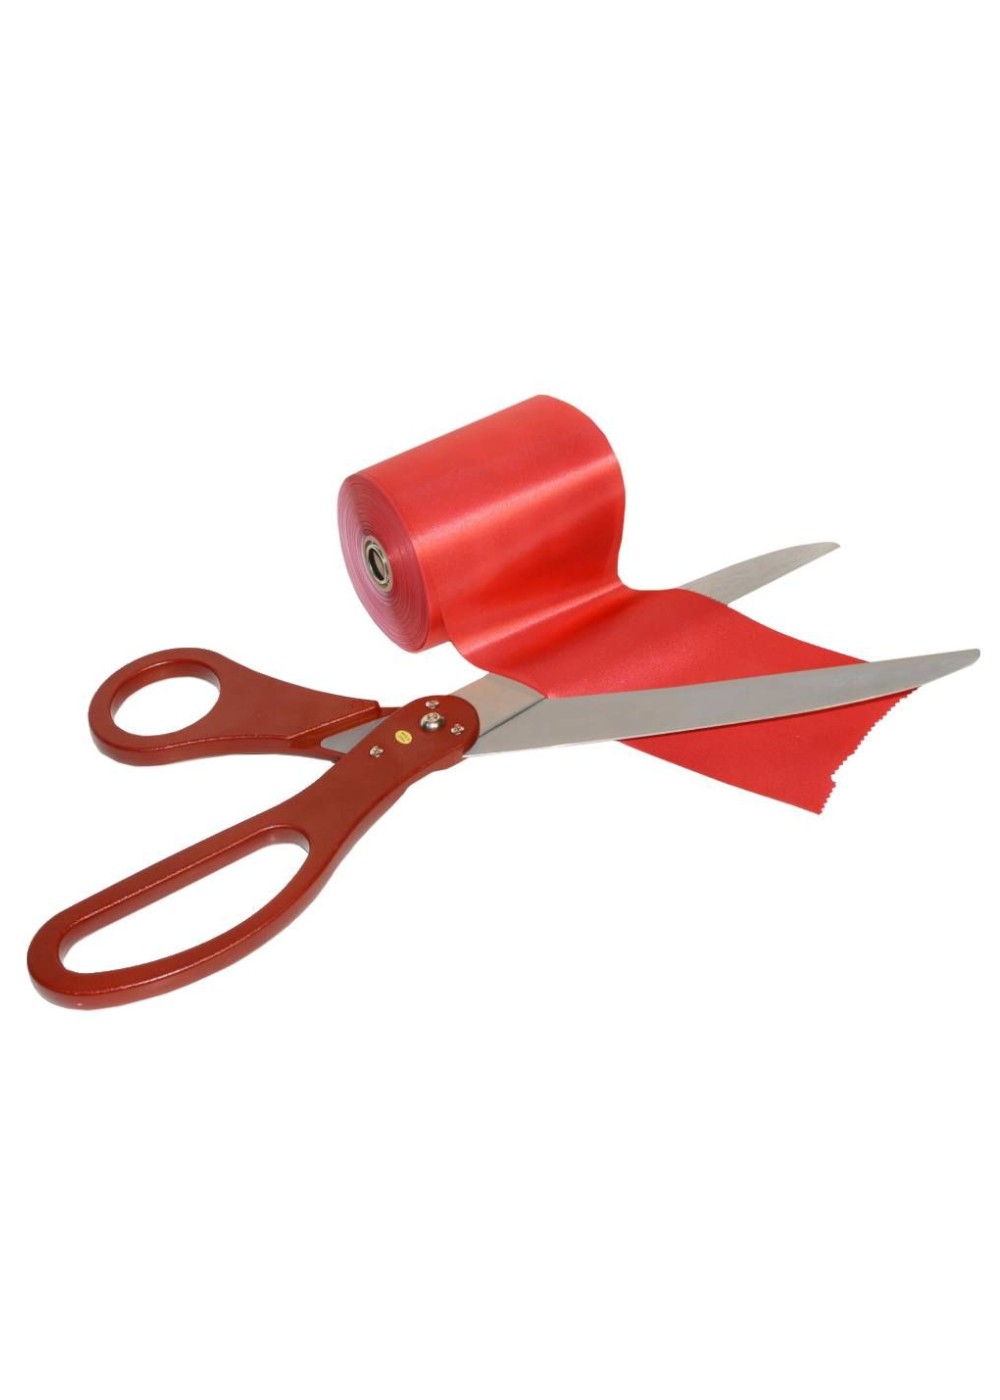  Ribbon Cutting Scissors Red Kit